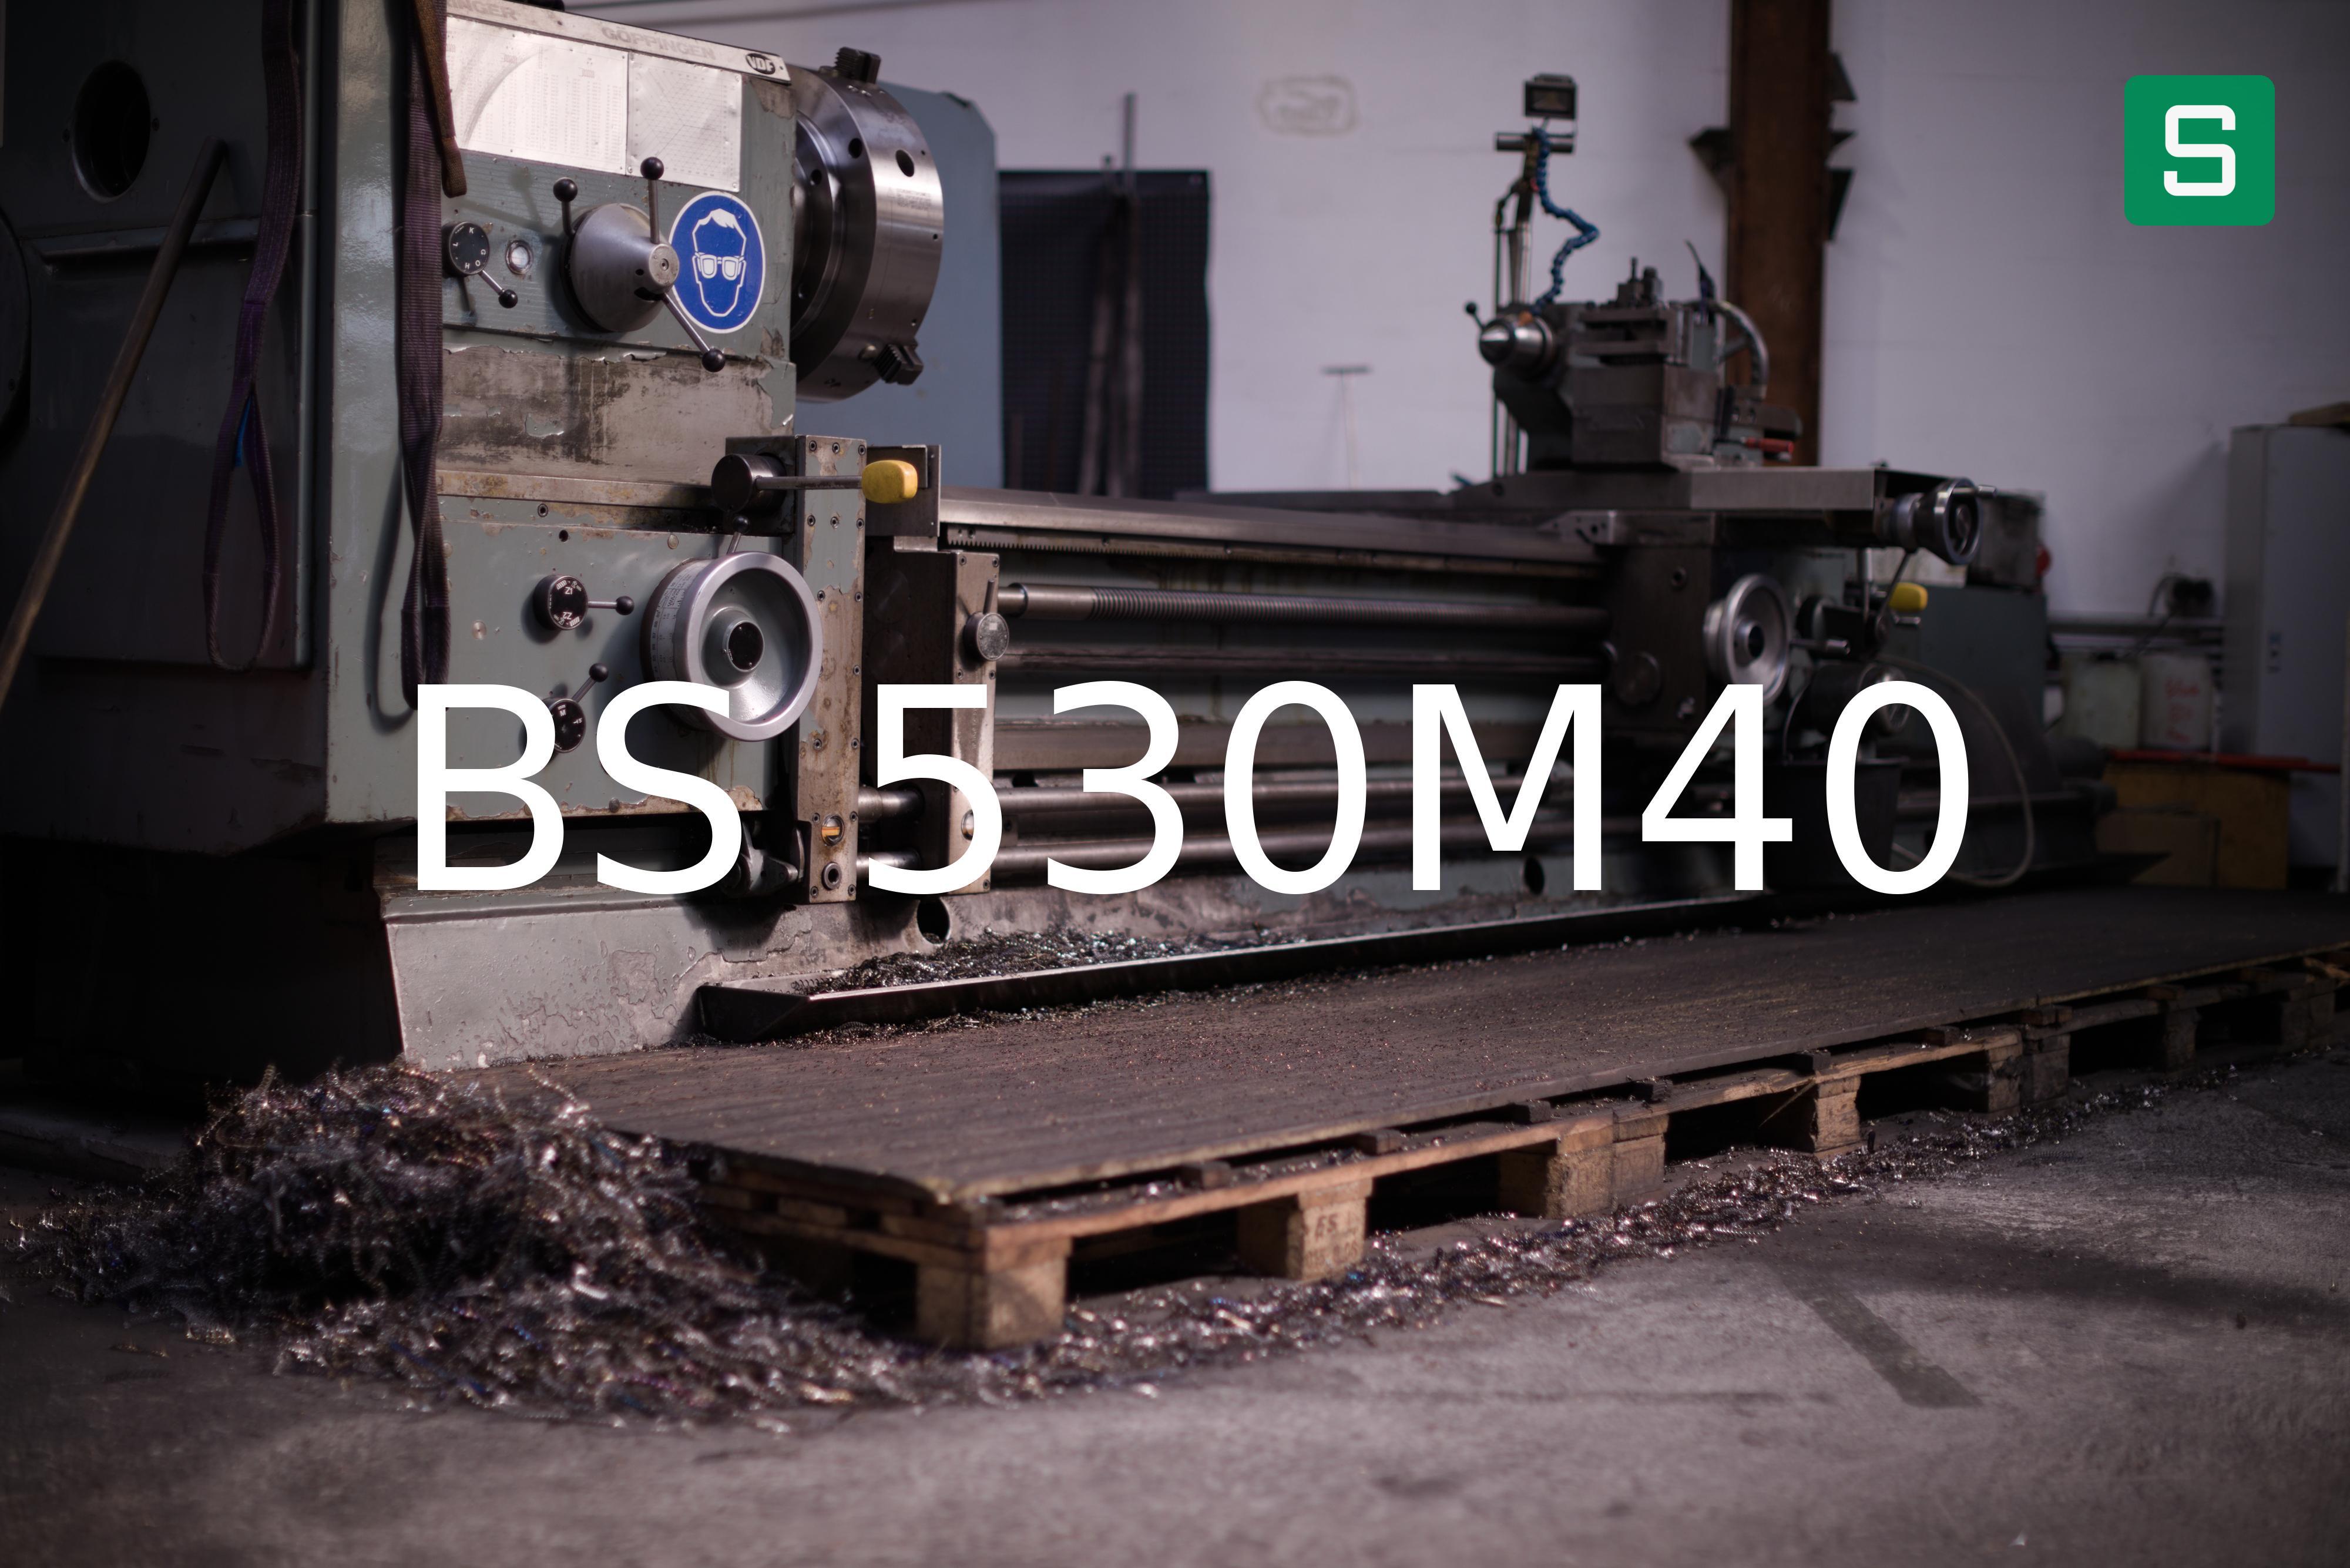 Steel Material: BS 530M40